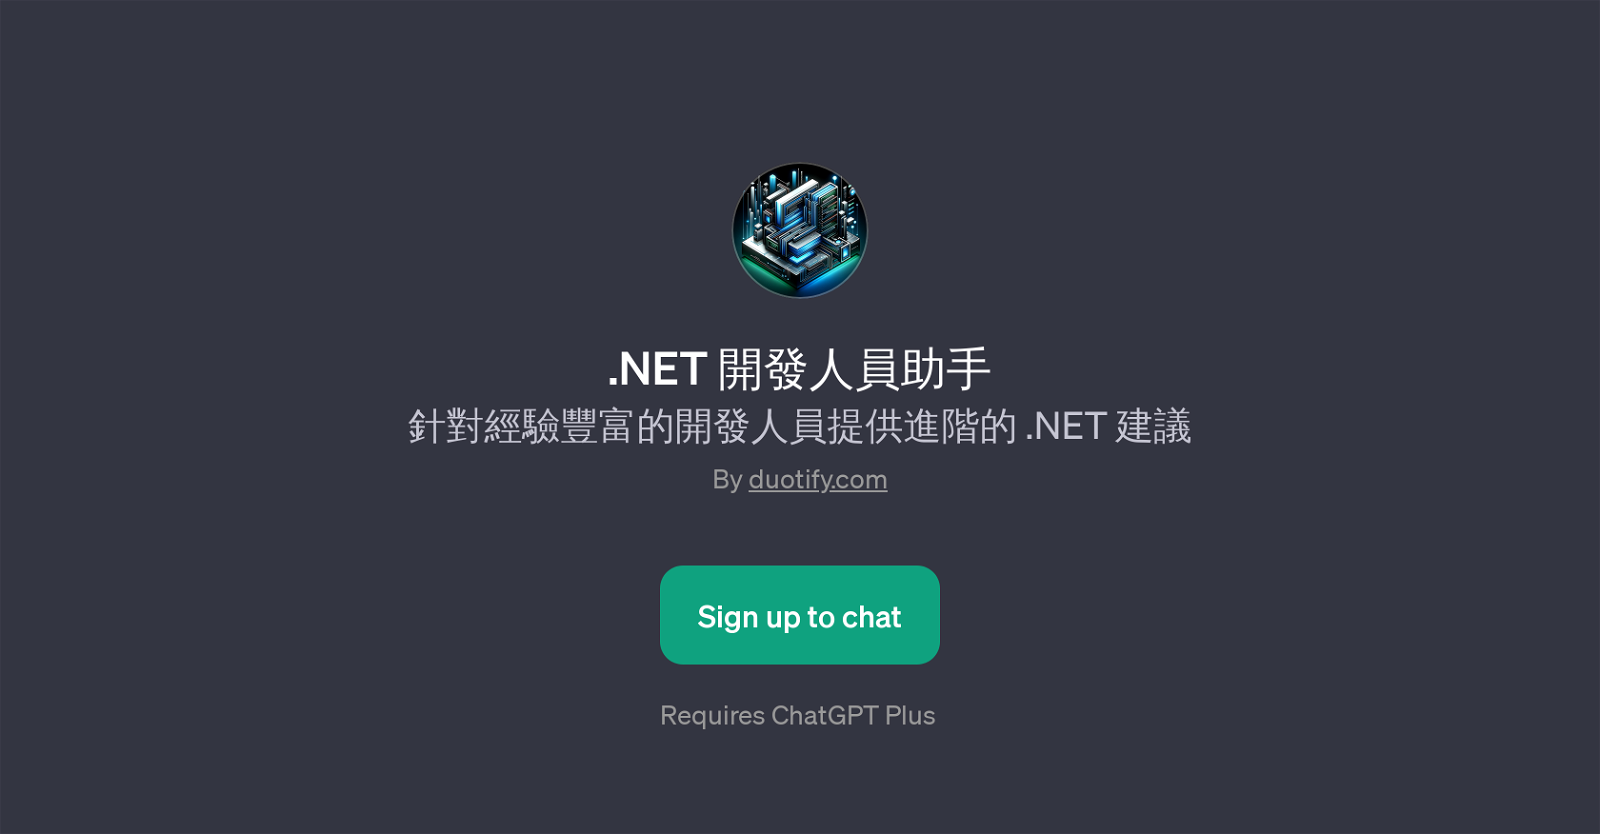 .NET website